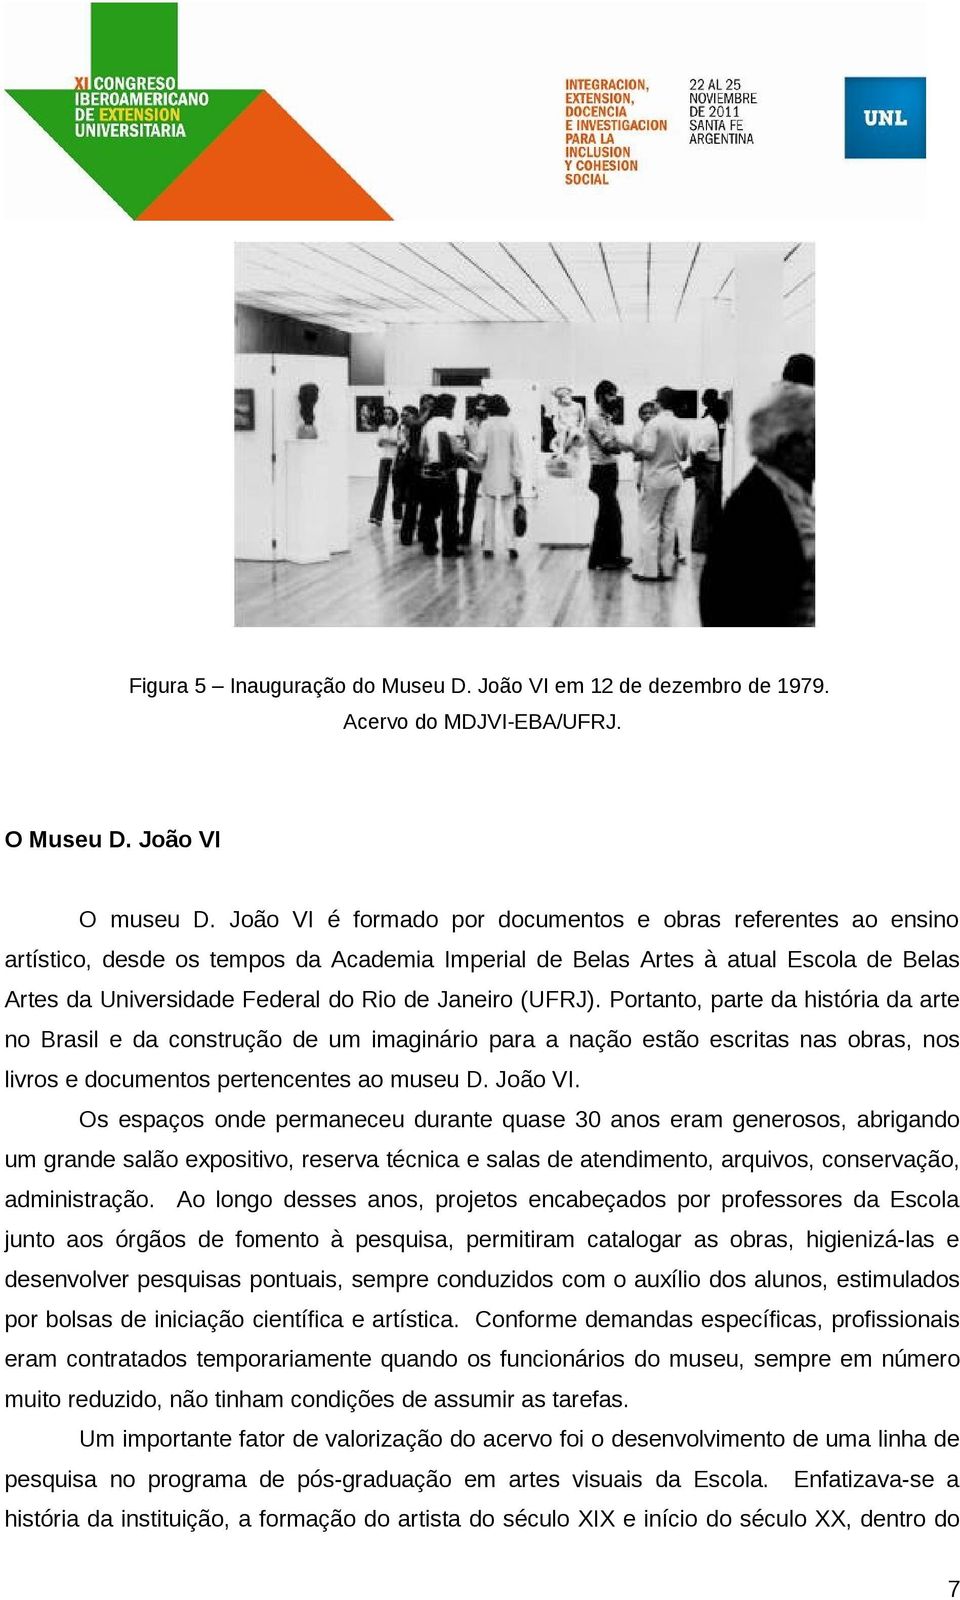 (UFRJ). Portanto, parte da história da arte no Brasil e da construção de um imaginário para a nação estão escritas nas obras, nos livros e documentos pertencentes ao museu D. João VI.